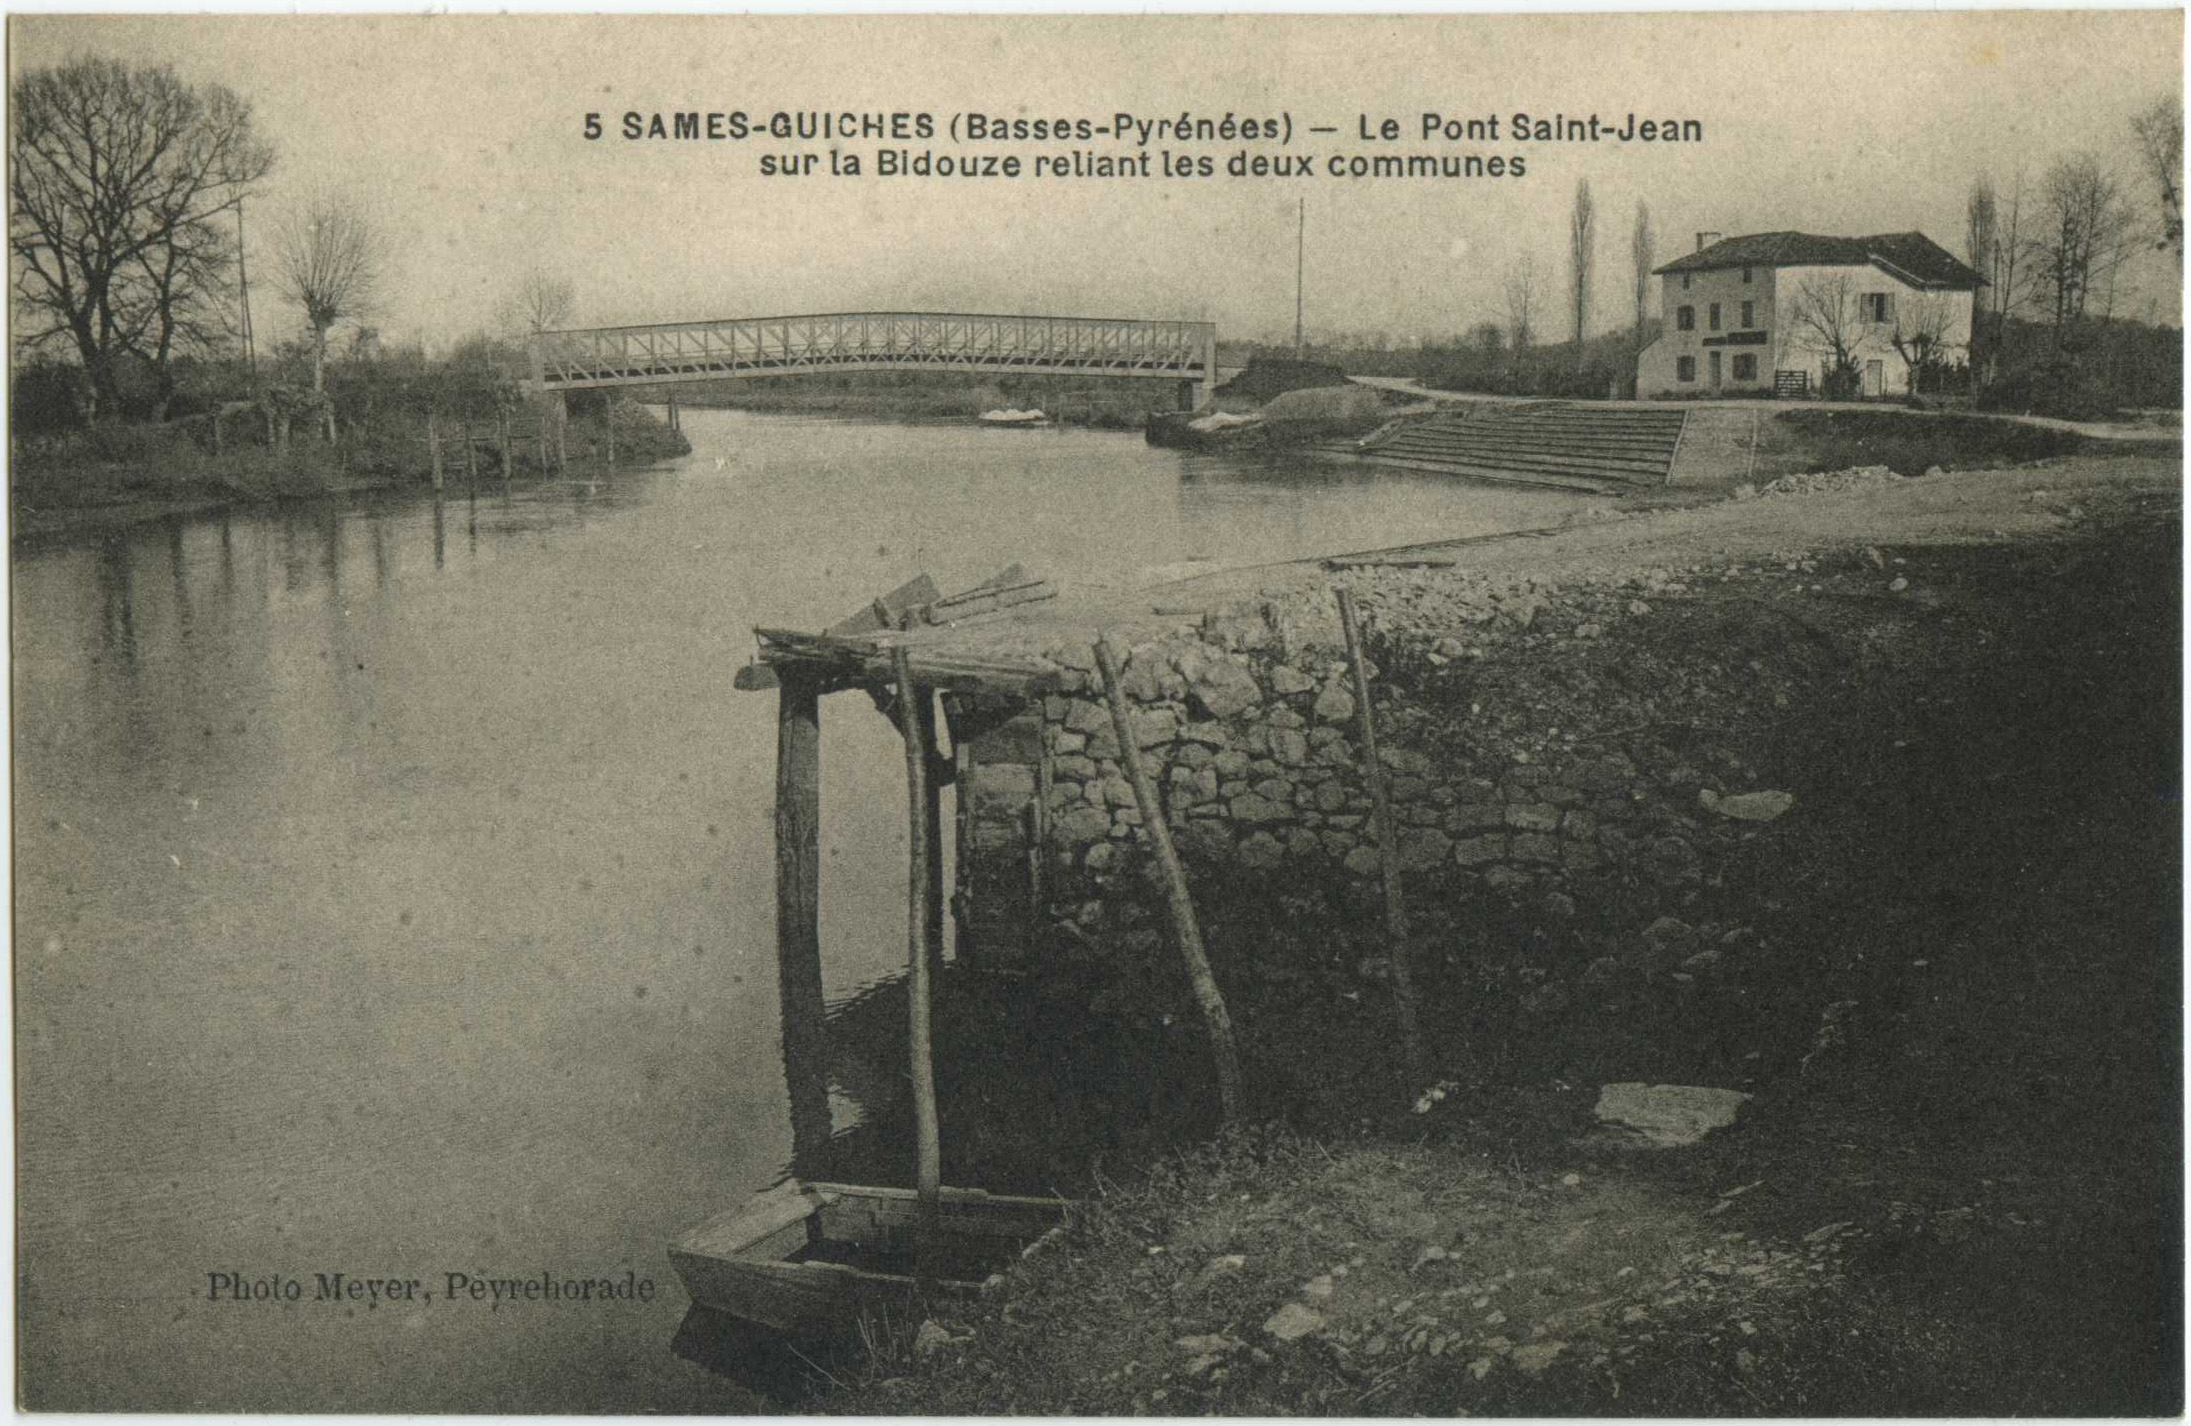 Guiche - SAMES-GUICHES - Le Pont Saint-Jean sur la Bidouze reliant les deux communes